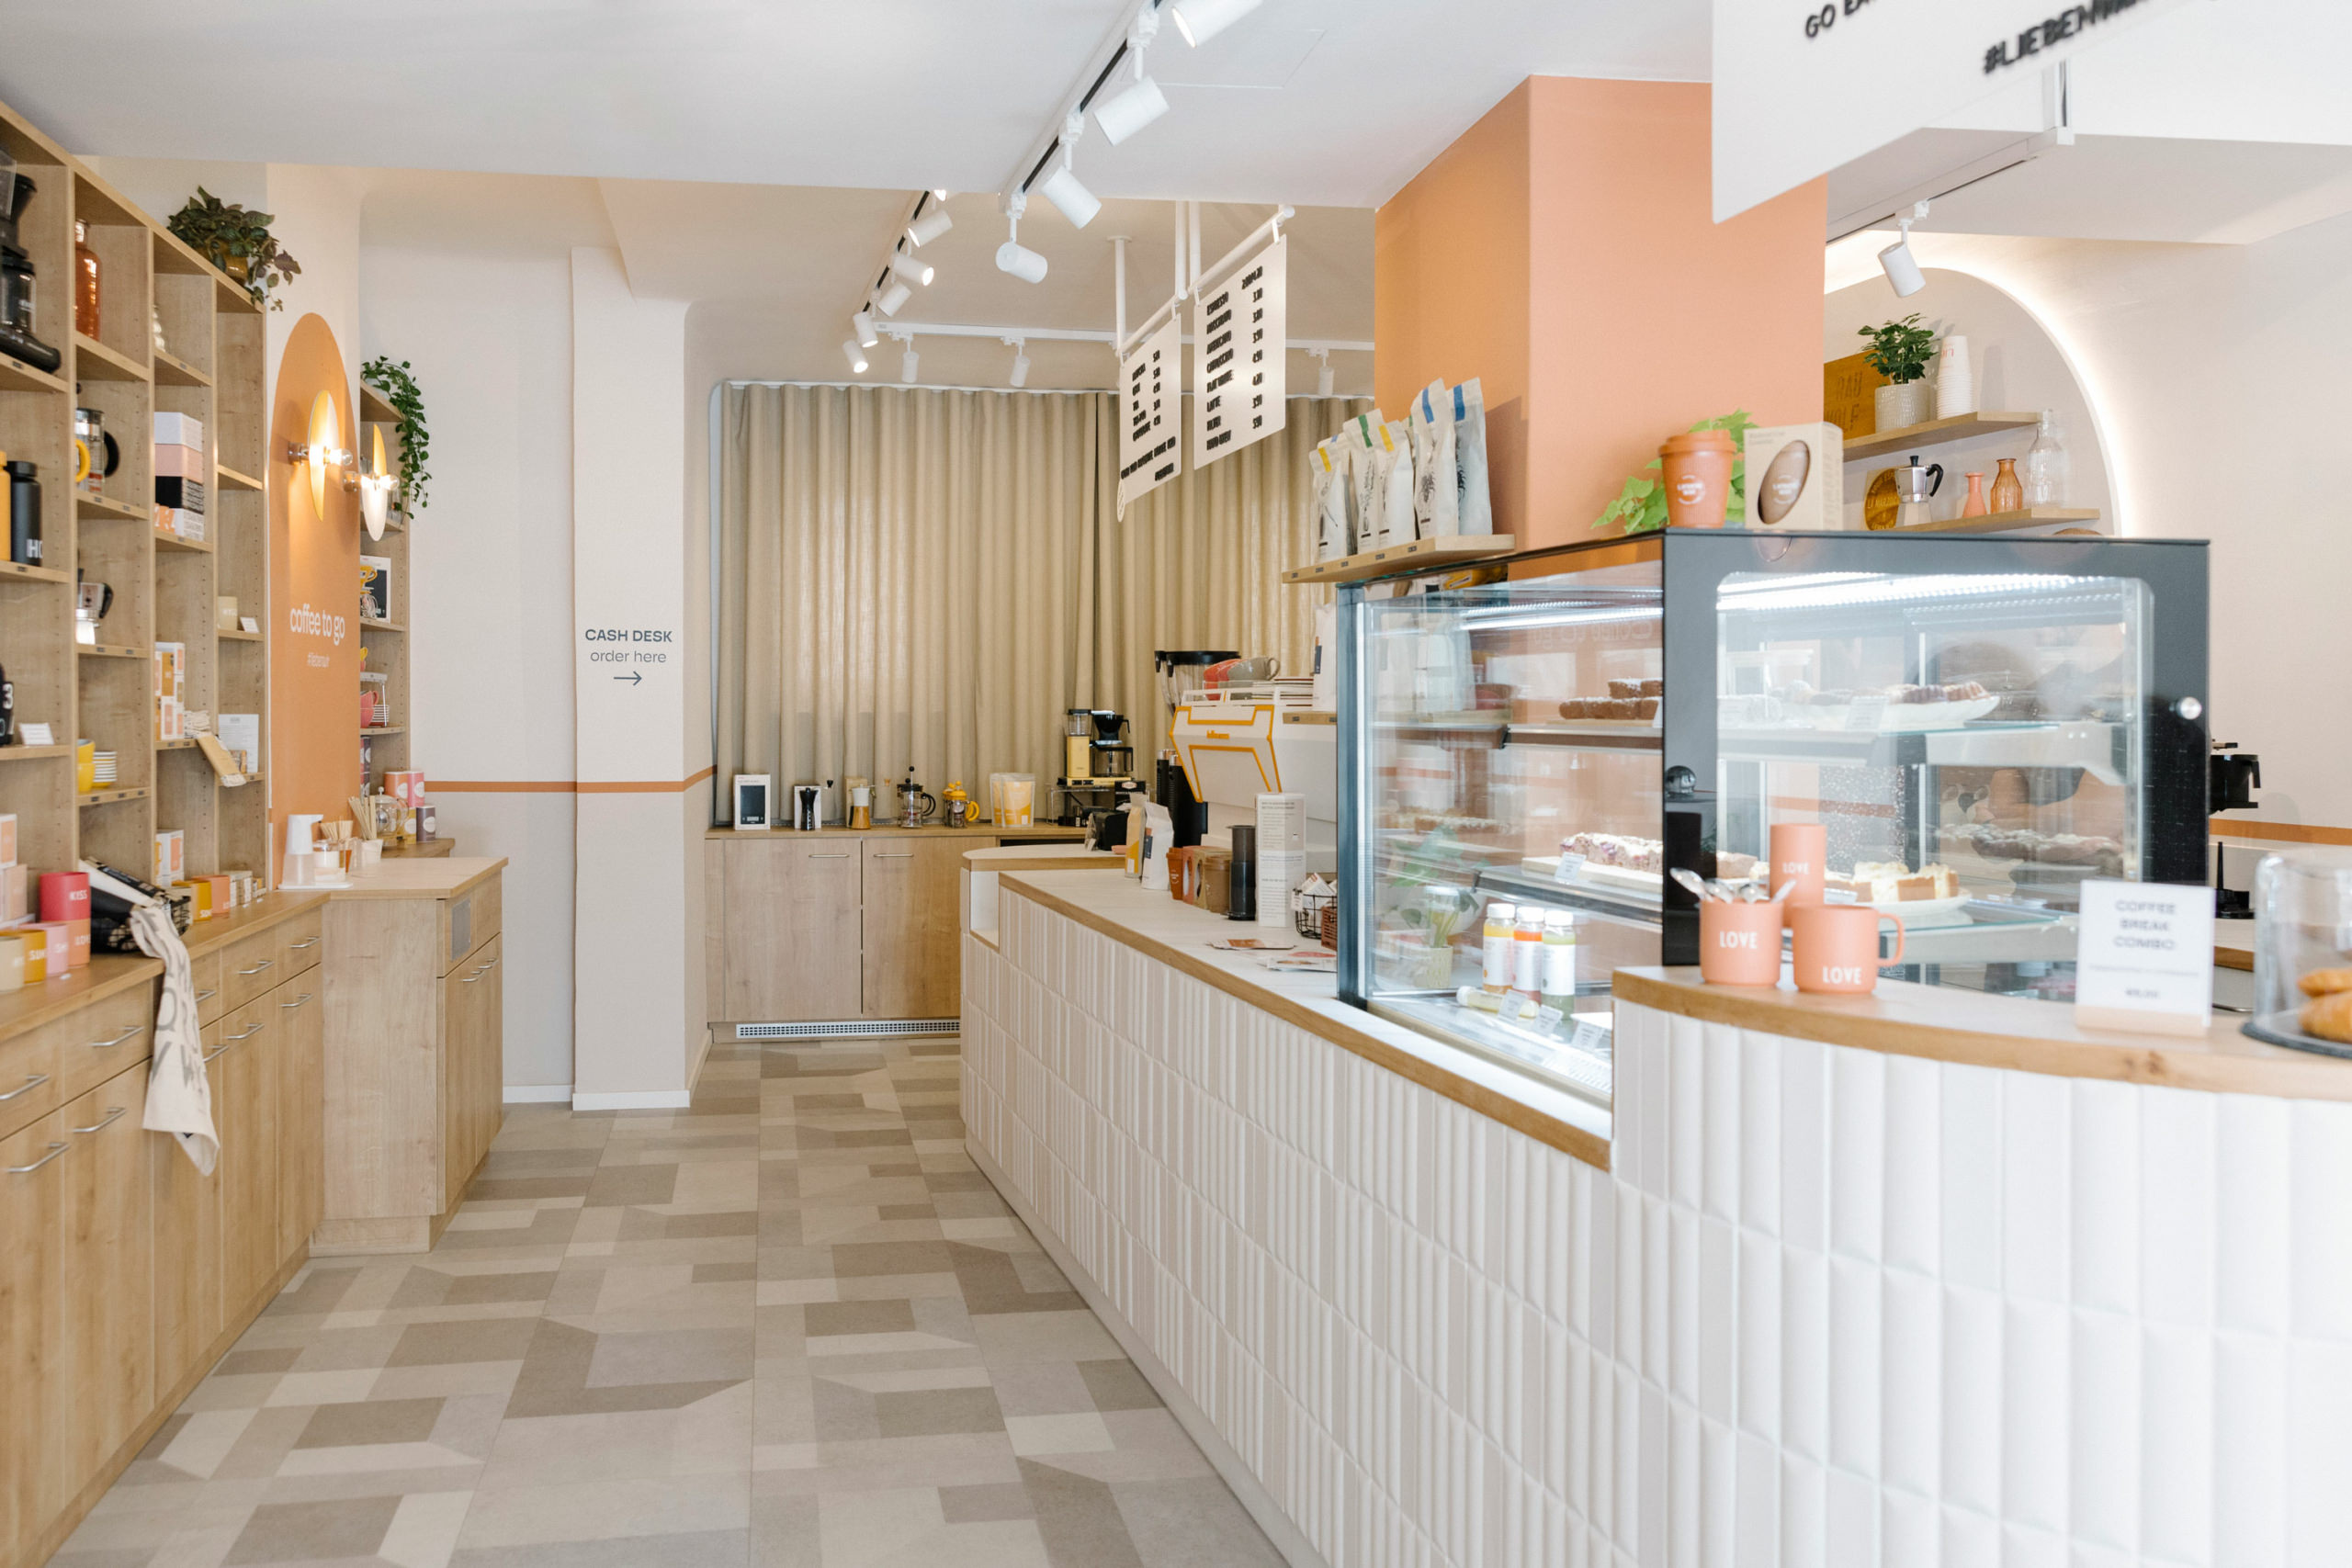 Interior Design Konzept von Meindl Cavar Concepts für Lieben Wir – Coffee Concept Store